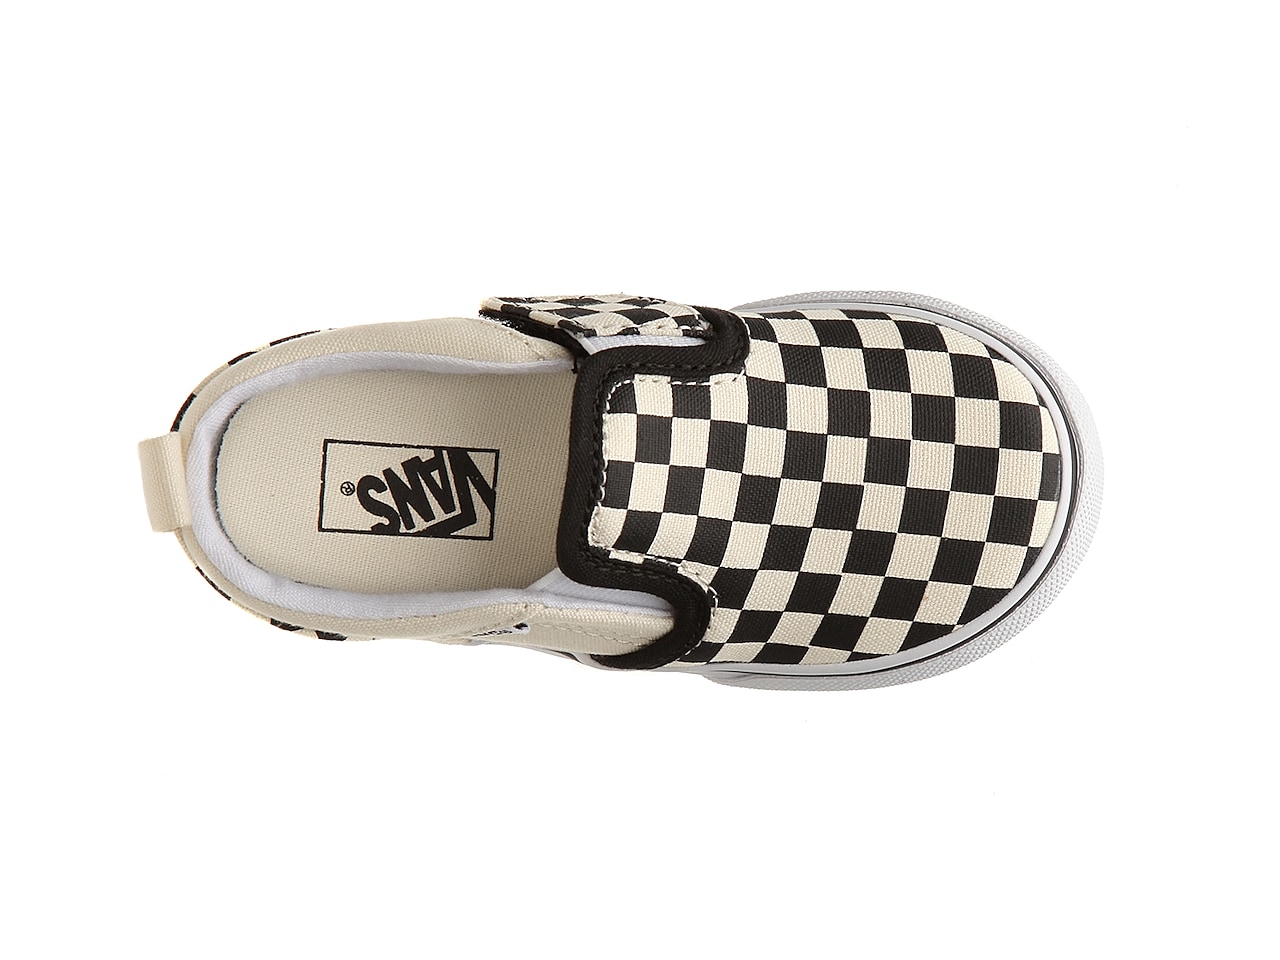 Vans Asher Checkers Slip-On Sneaker - Kids' | DSW